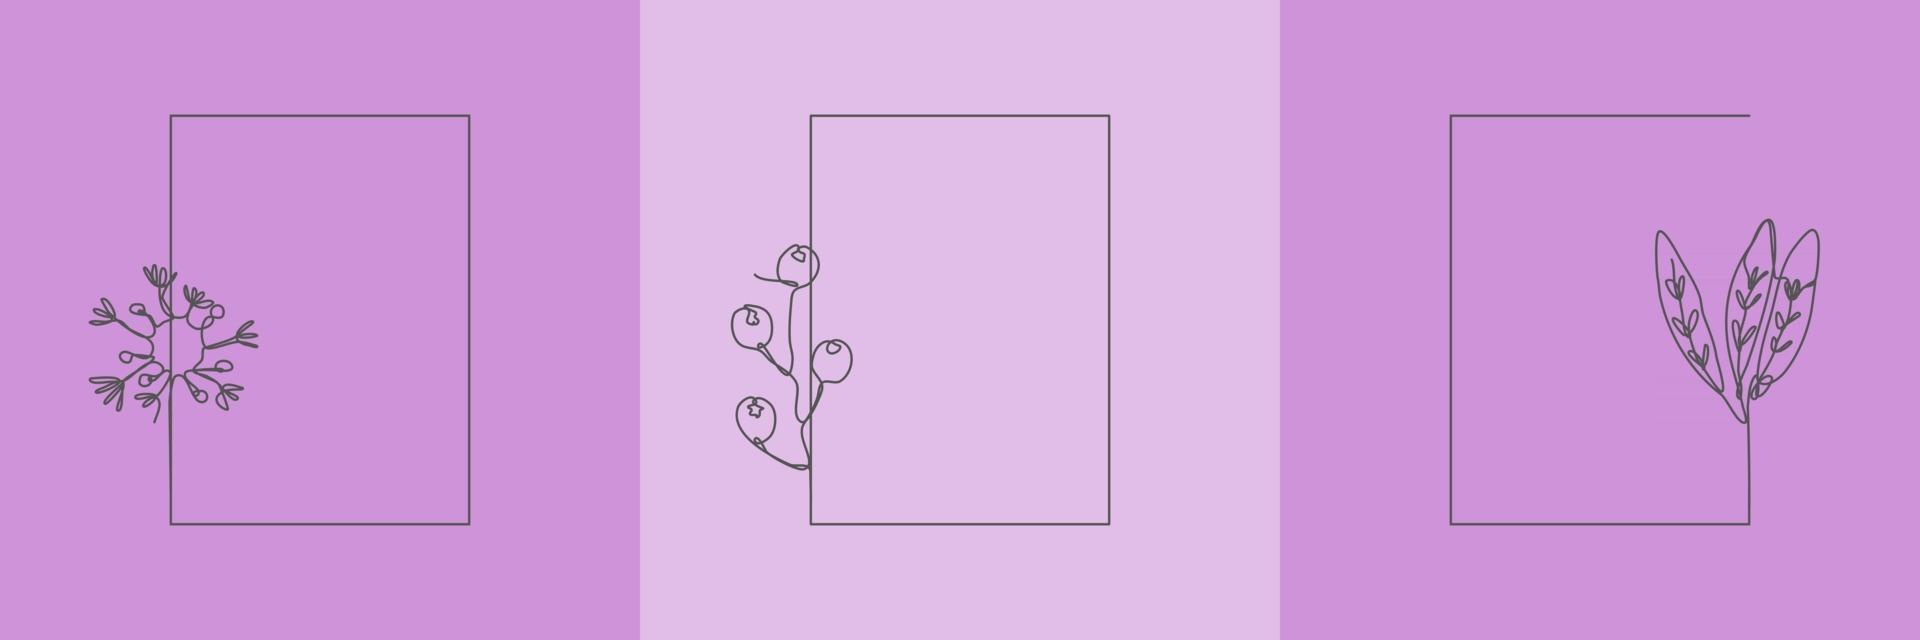 Stellen Sie handgezeichnetes organisches Blumengras, Blätter und Blumen mit violettem Rechteckrahmen ein, dekoratives Blattelement. Strichzeichnungen für Social Media, Hochzeit, Einladung, Logo, Kosmetik vektor